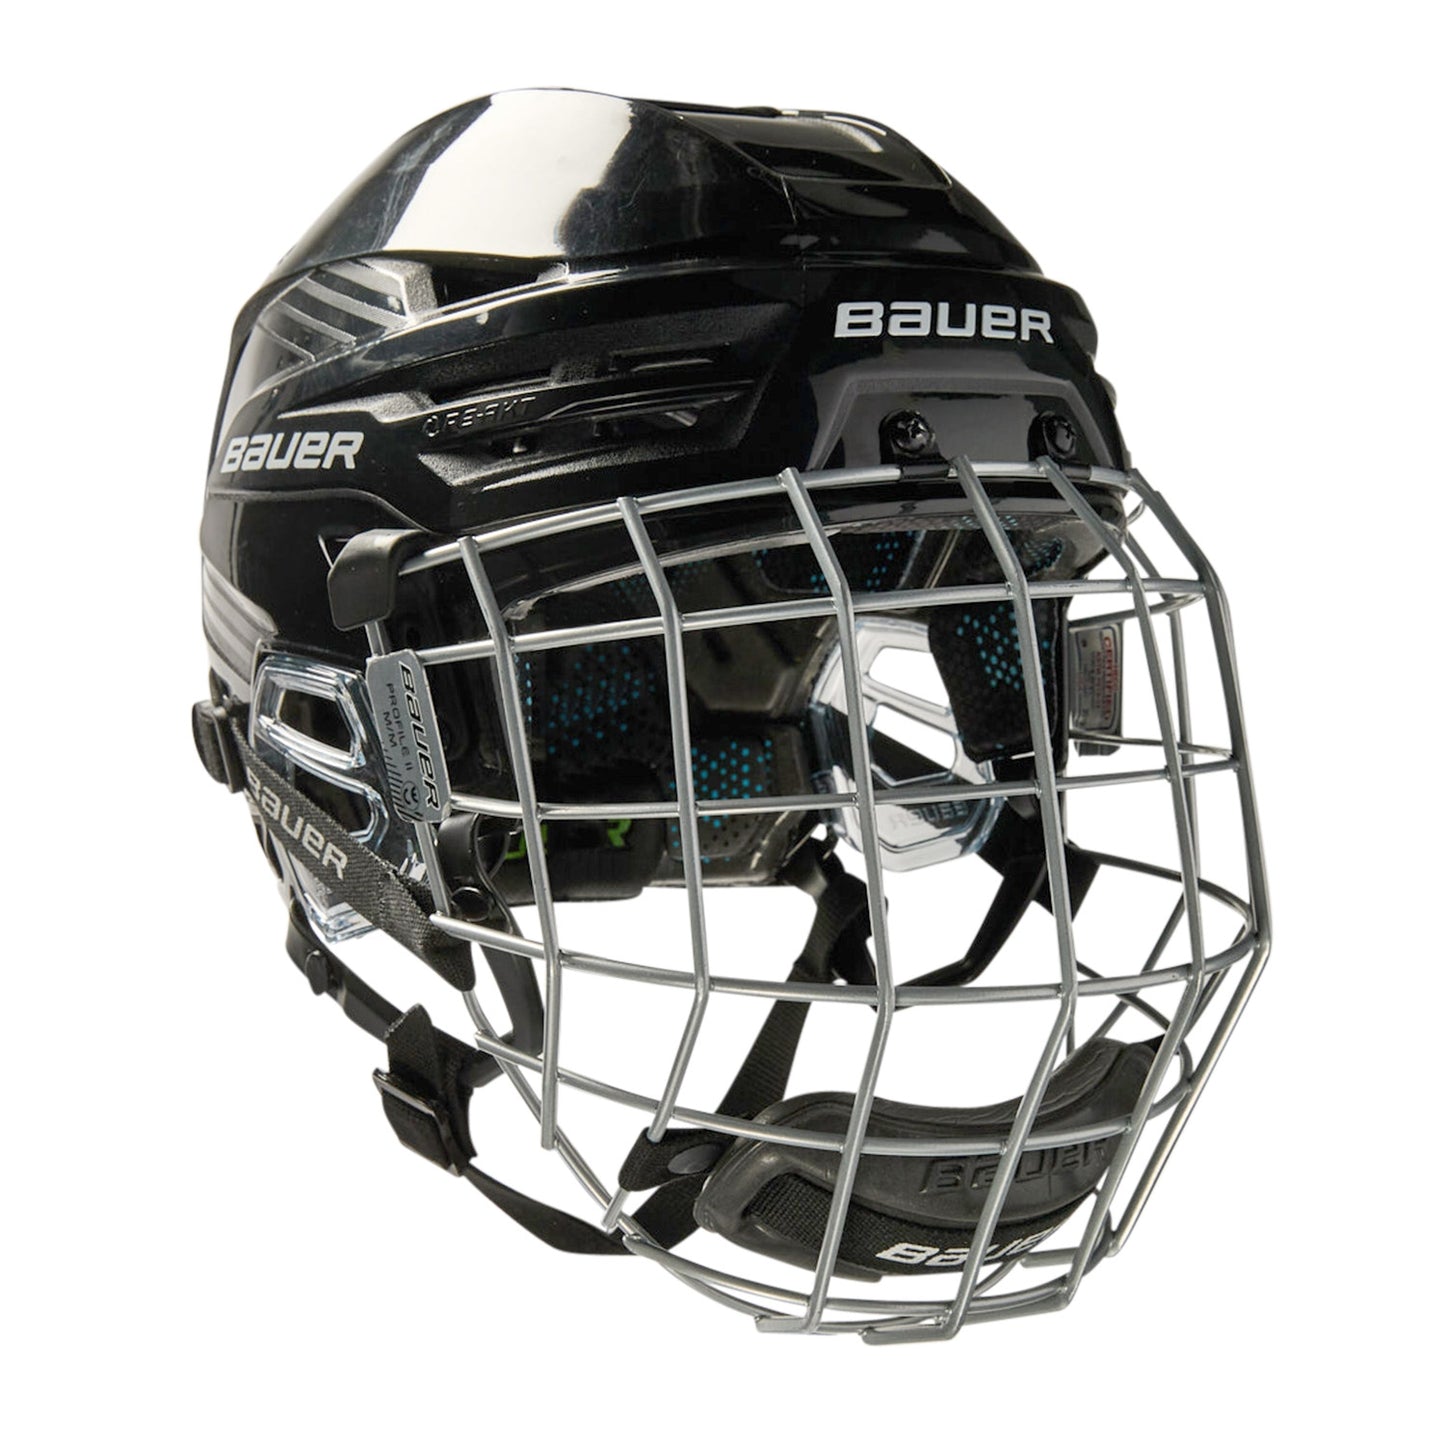 Bauer Reakt 95 helmet with grille